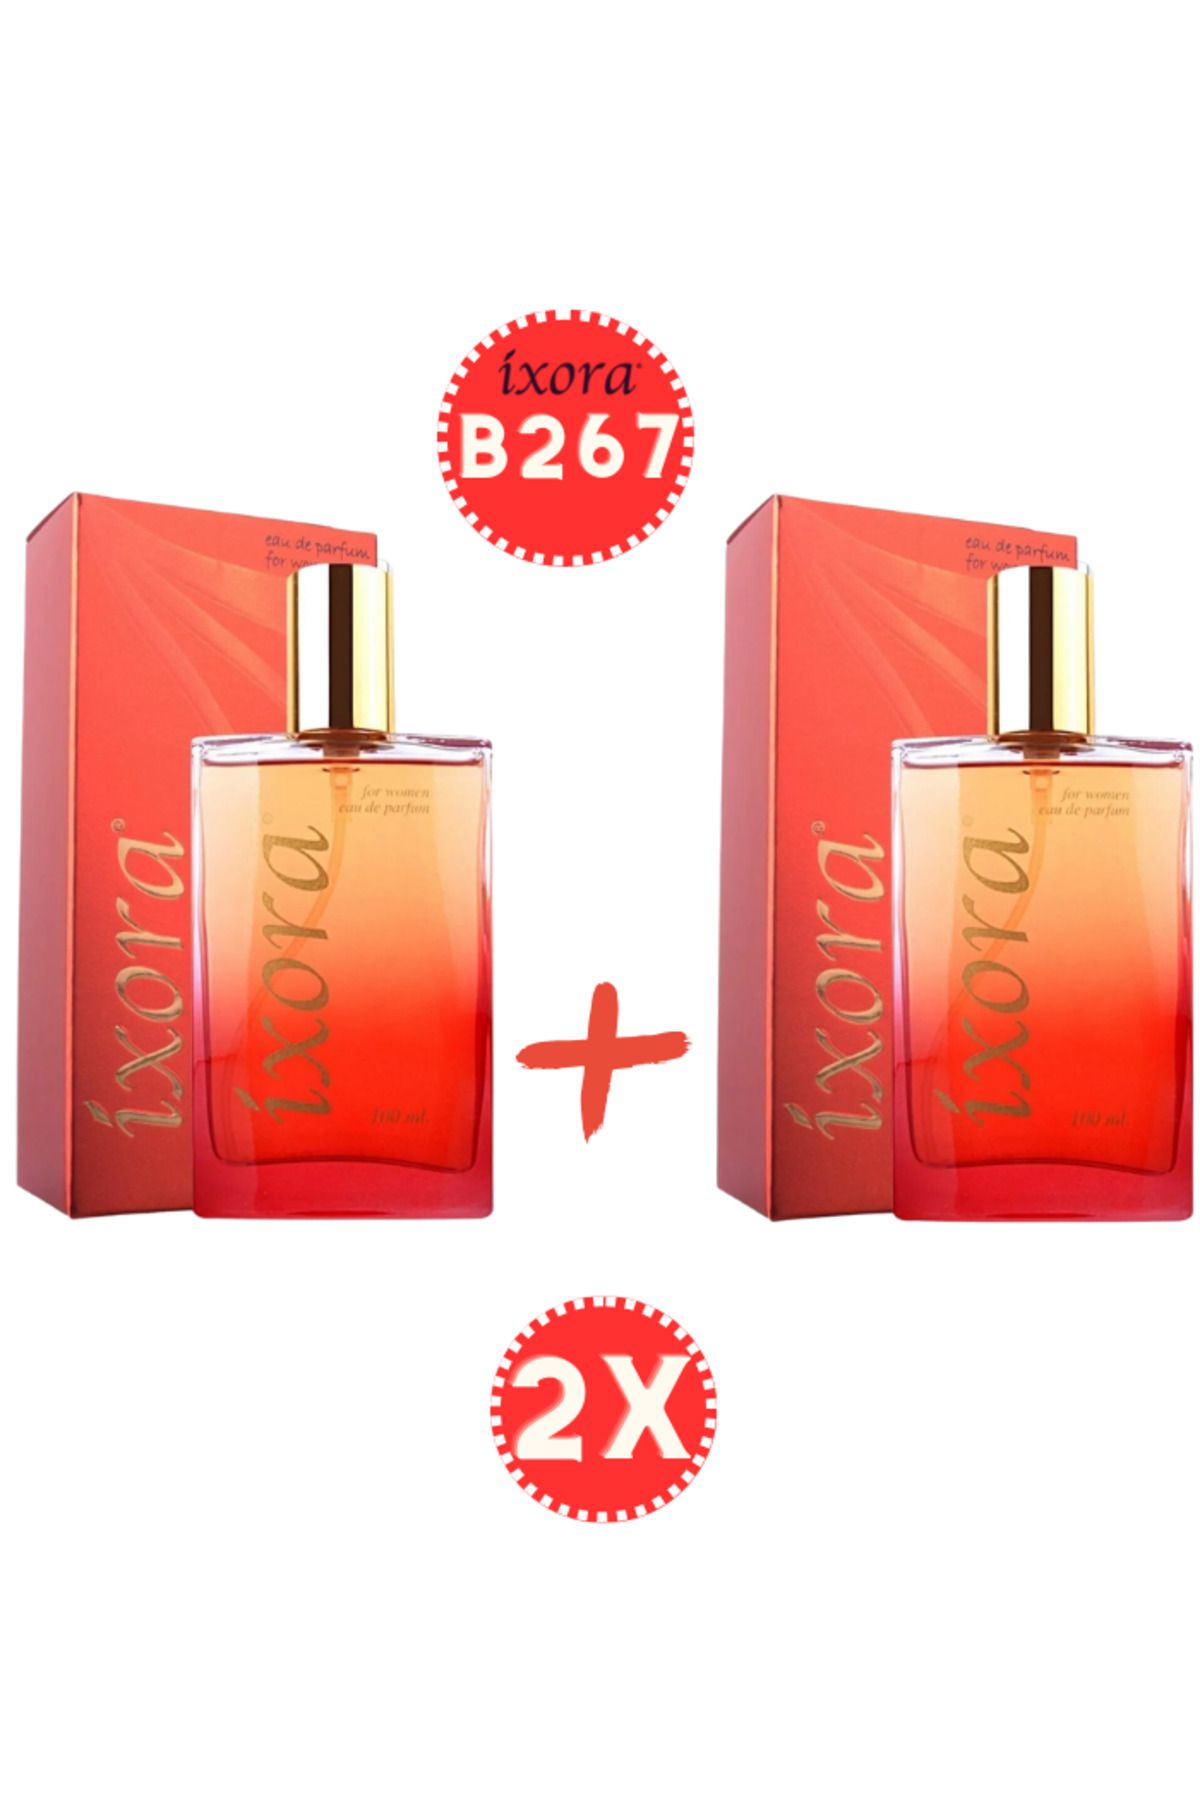 Ixora B267x2 (2 adet ) Kadın Parfüm Fateful 100 ml